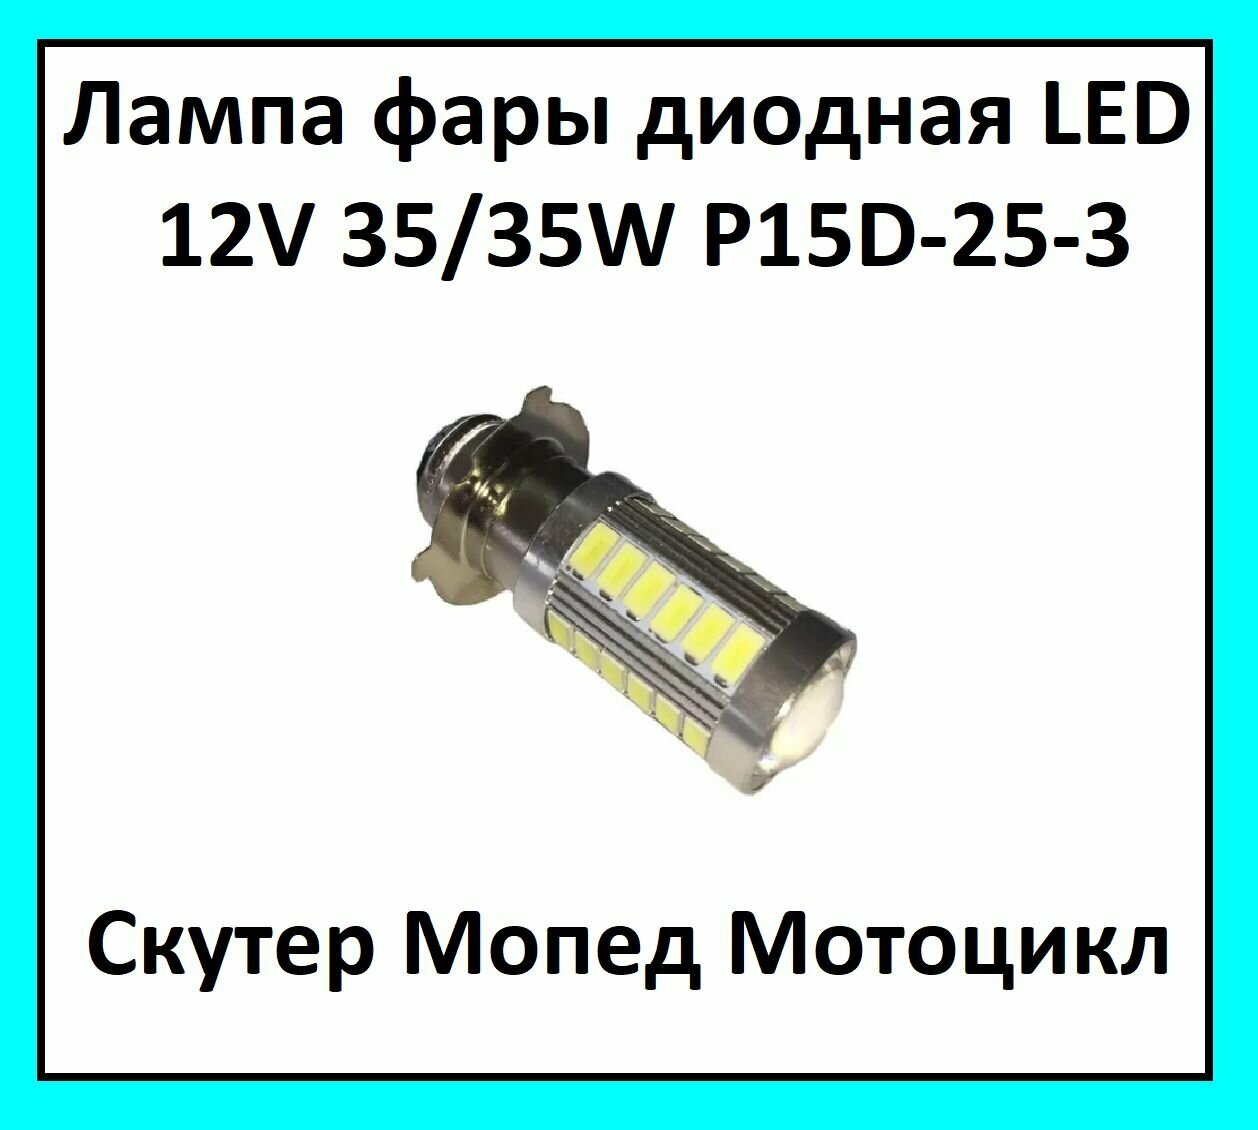 Лампа фары диодная LED P15D-25-3 12V 35/35W на скутер мопед мотоцикл